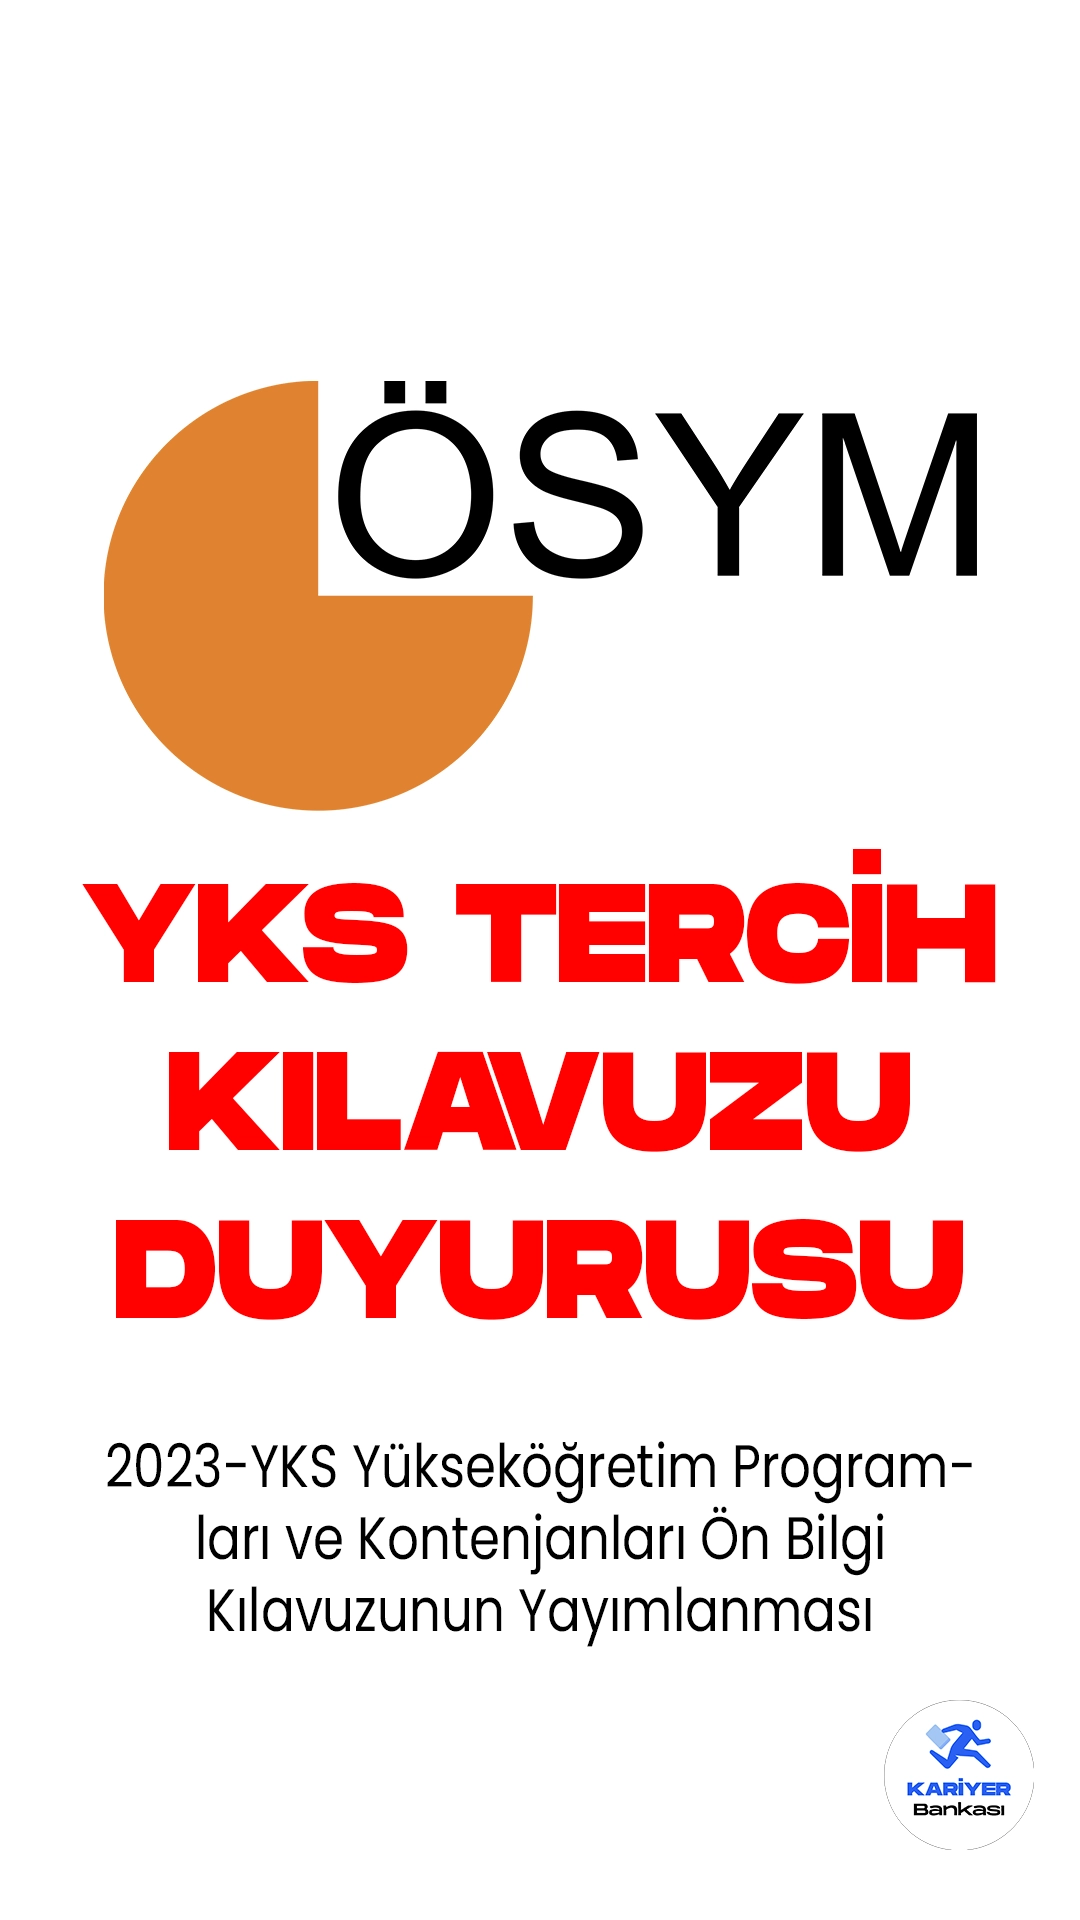 2023-YKS Yükseköğretim Programları ve Kontenjanları Kılavuzunun Yayımlanması Duyurusu.ÖSYM resmi sayfasından aşağıdaki ifadelere yer verilmiştir.